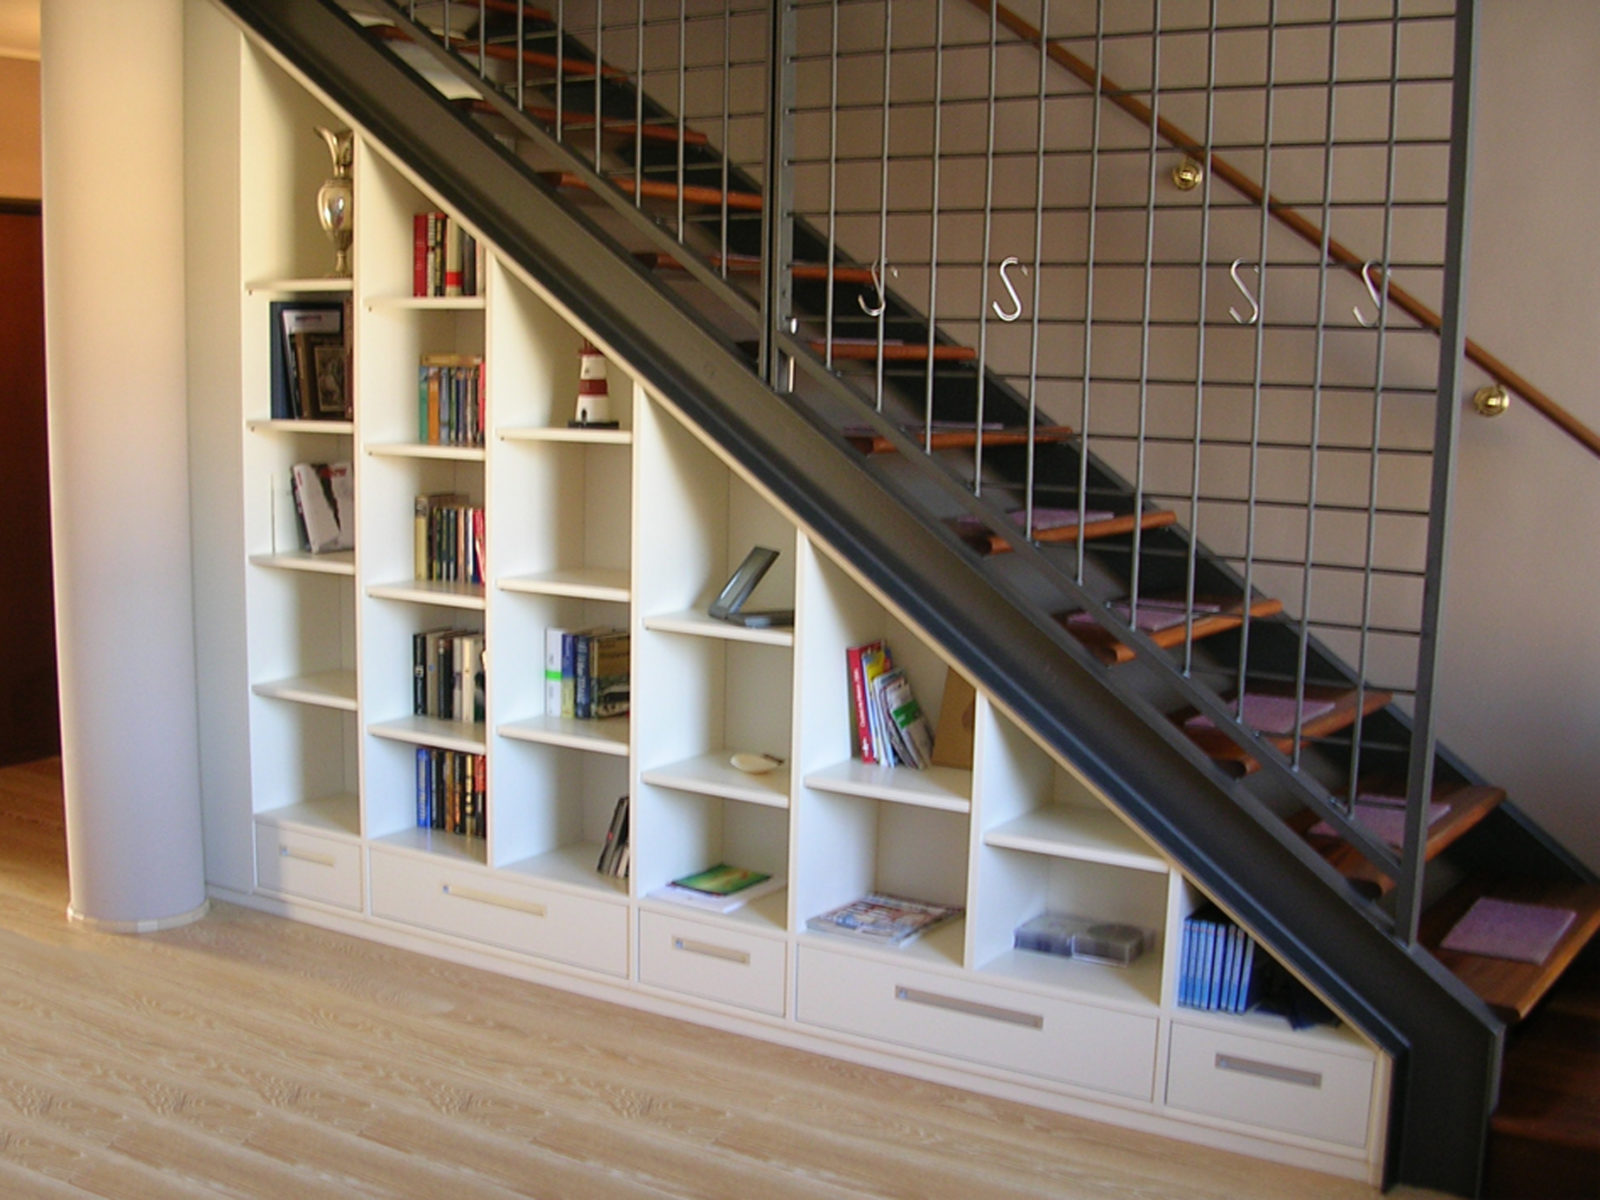 Стеллаж этаж. Стеллаж под лестницей. Шкаф под лестницей. Книжный стеллаж под лестницей. Шкафчики под лестницей.